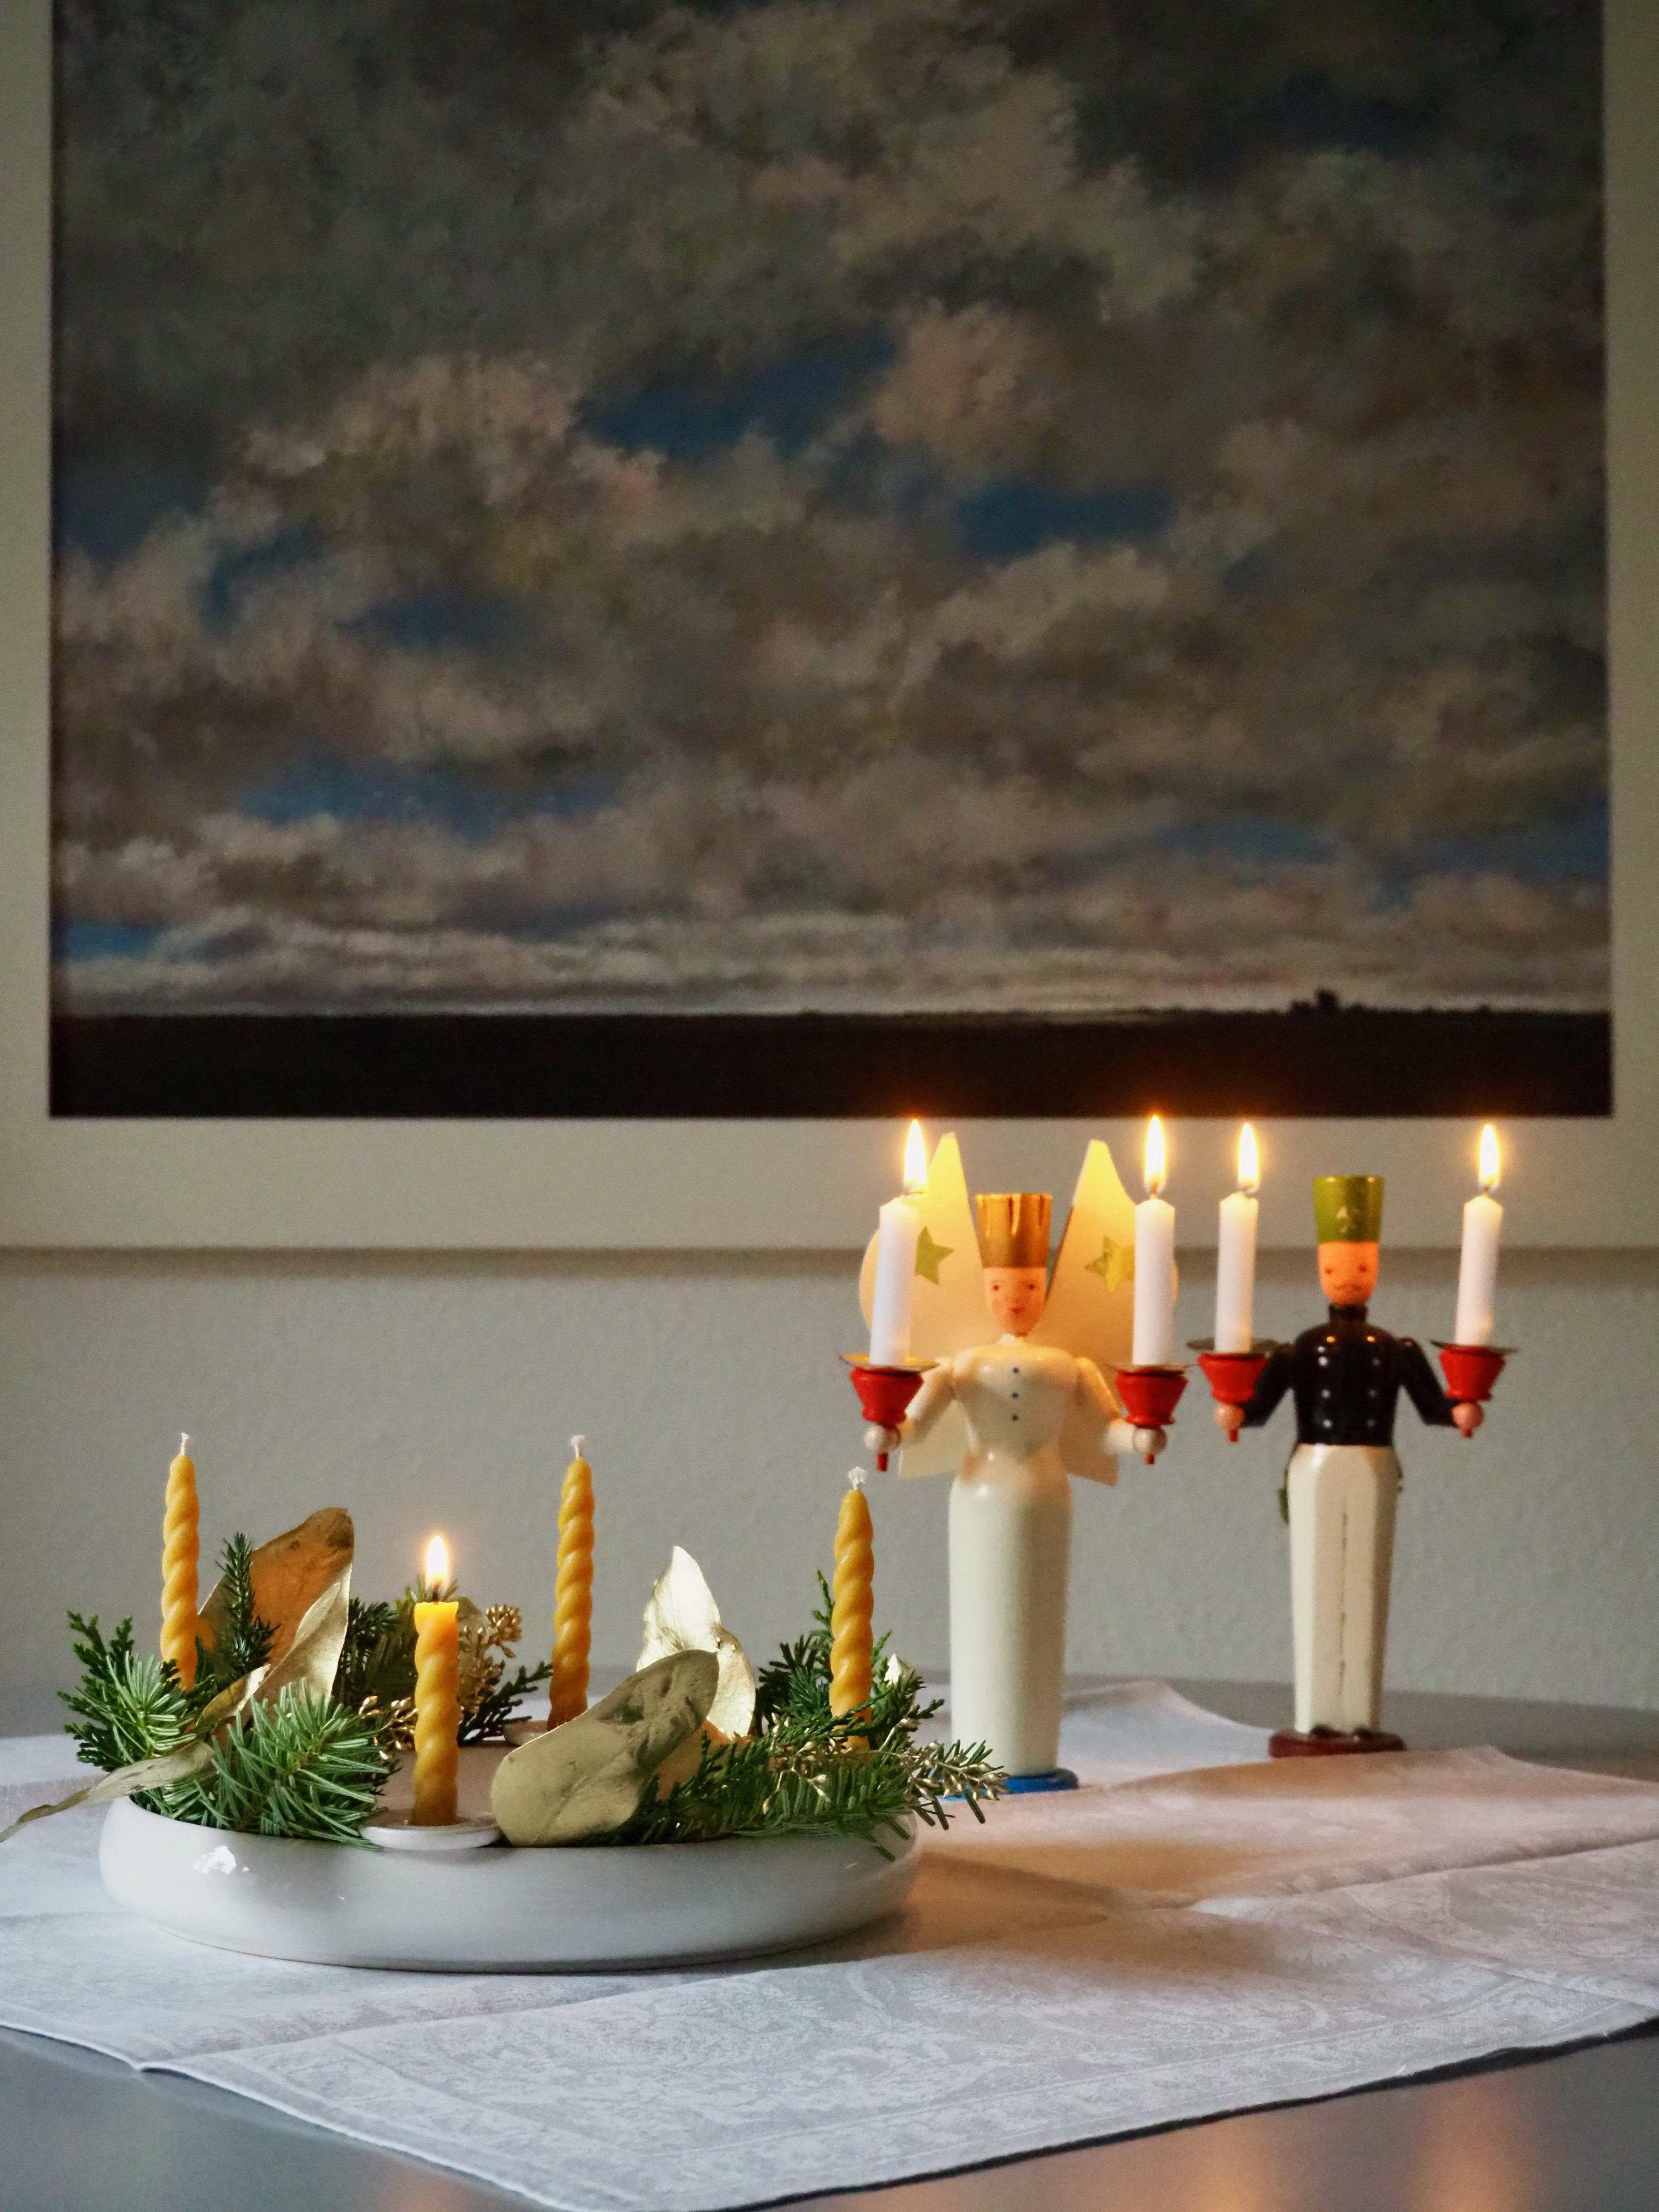 Frohen 1. Advent!
#adventskranz
#erzgebirgischevolkskunst